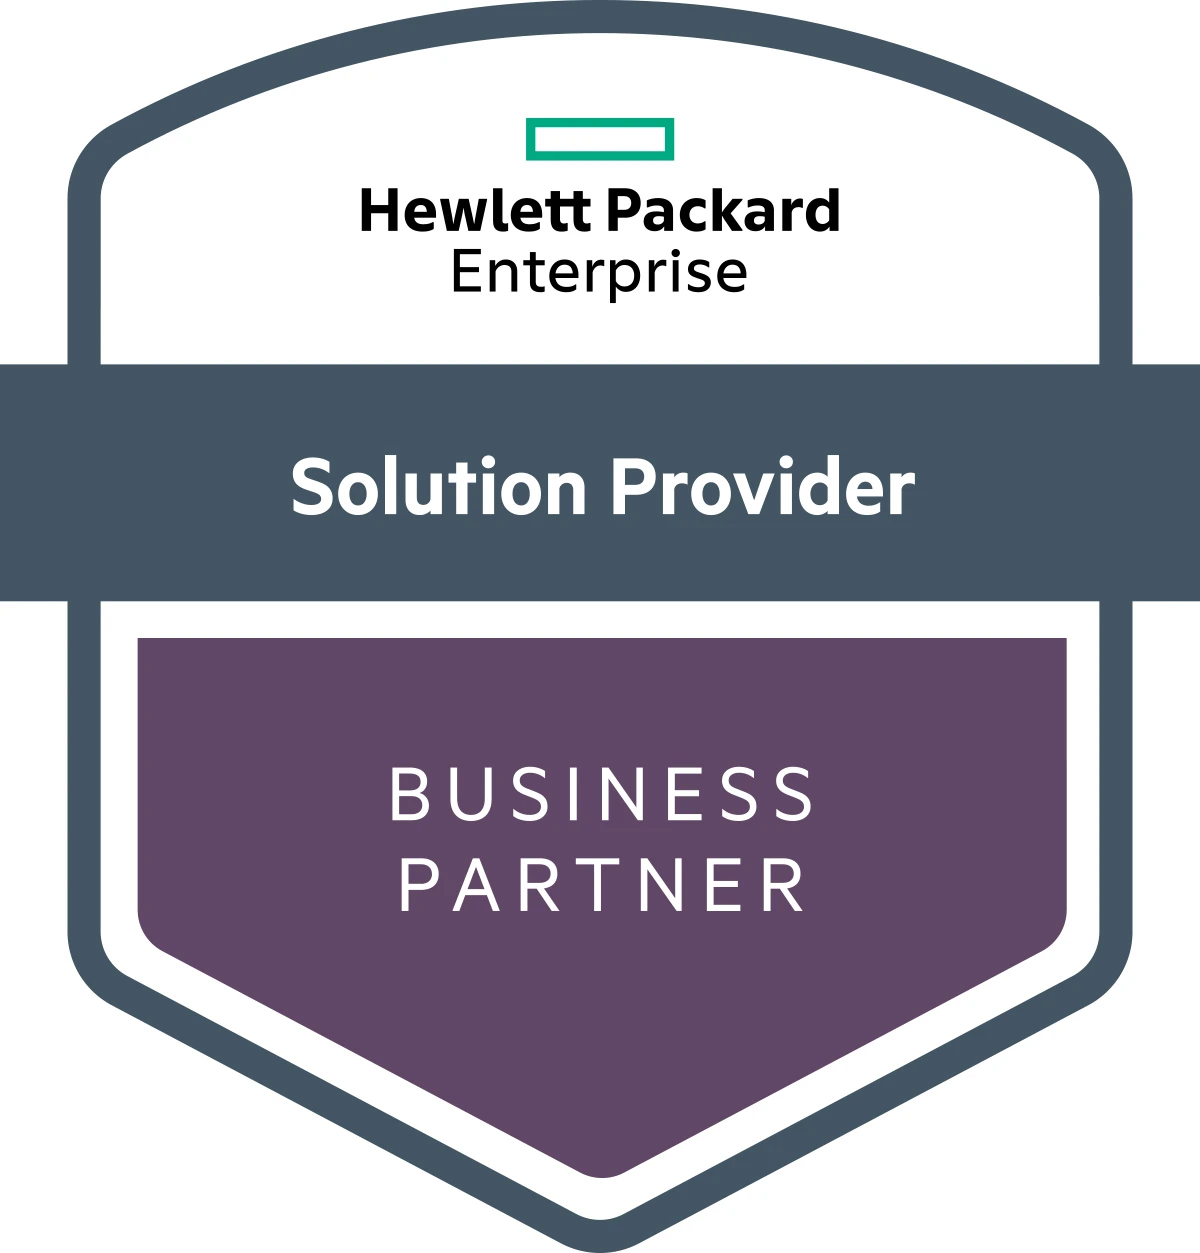 Hewlett Packard Enterprise – Business Partner